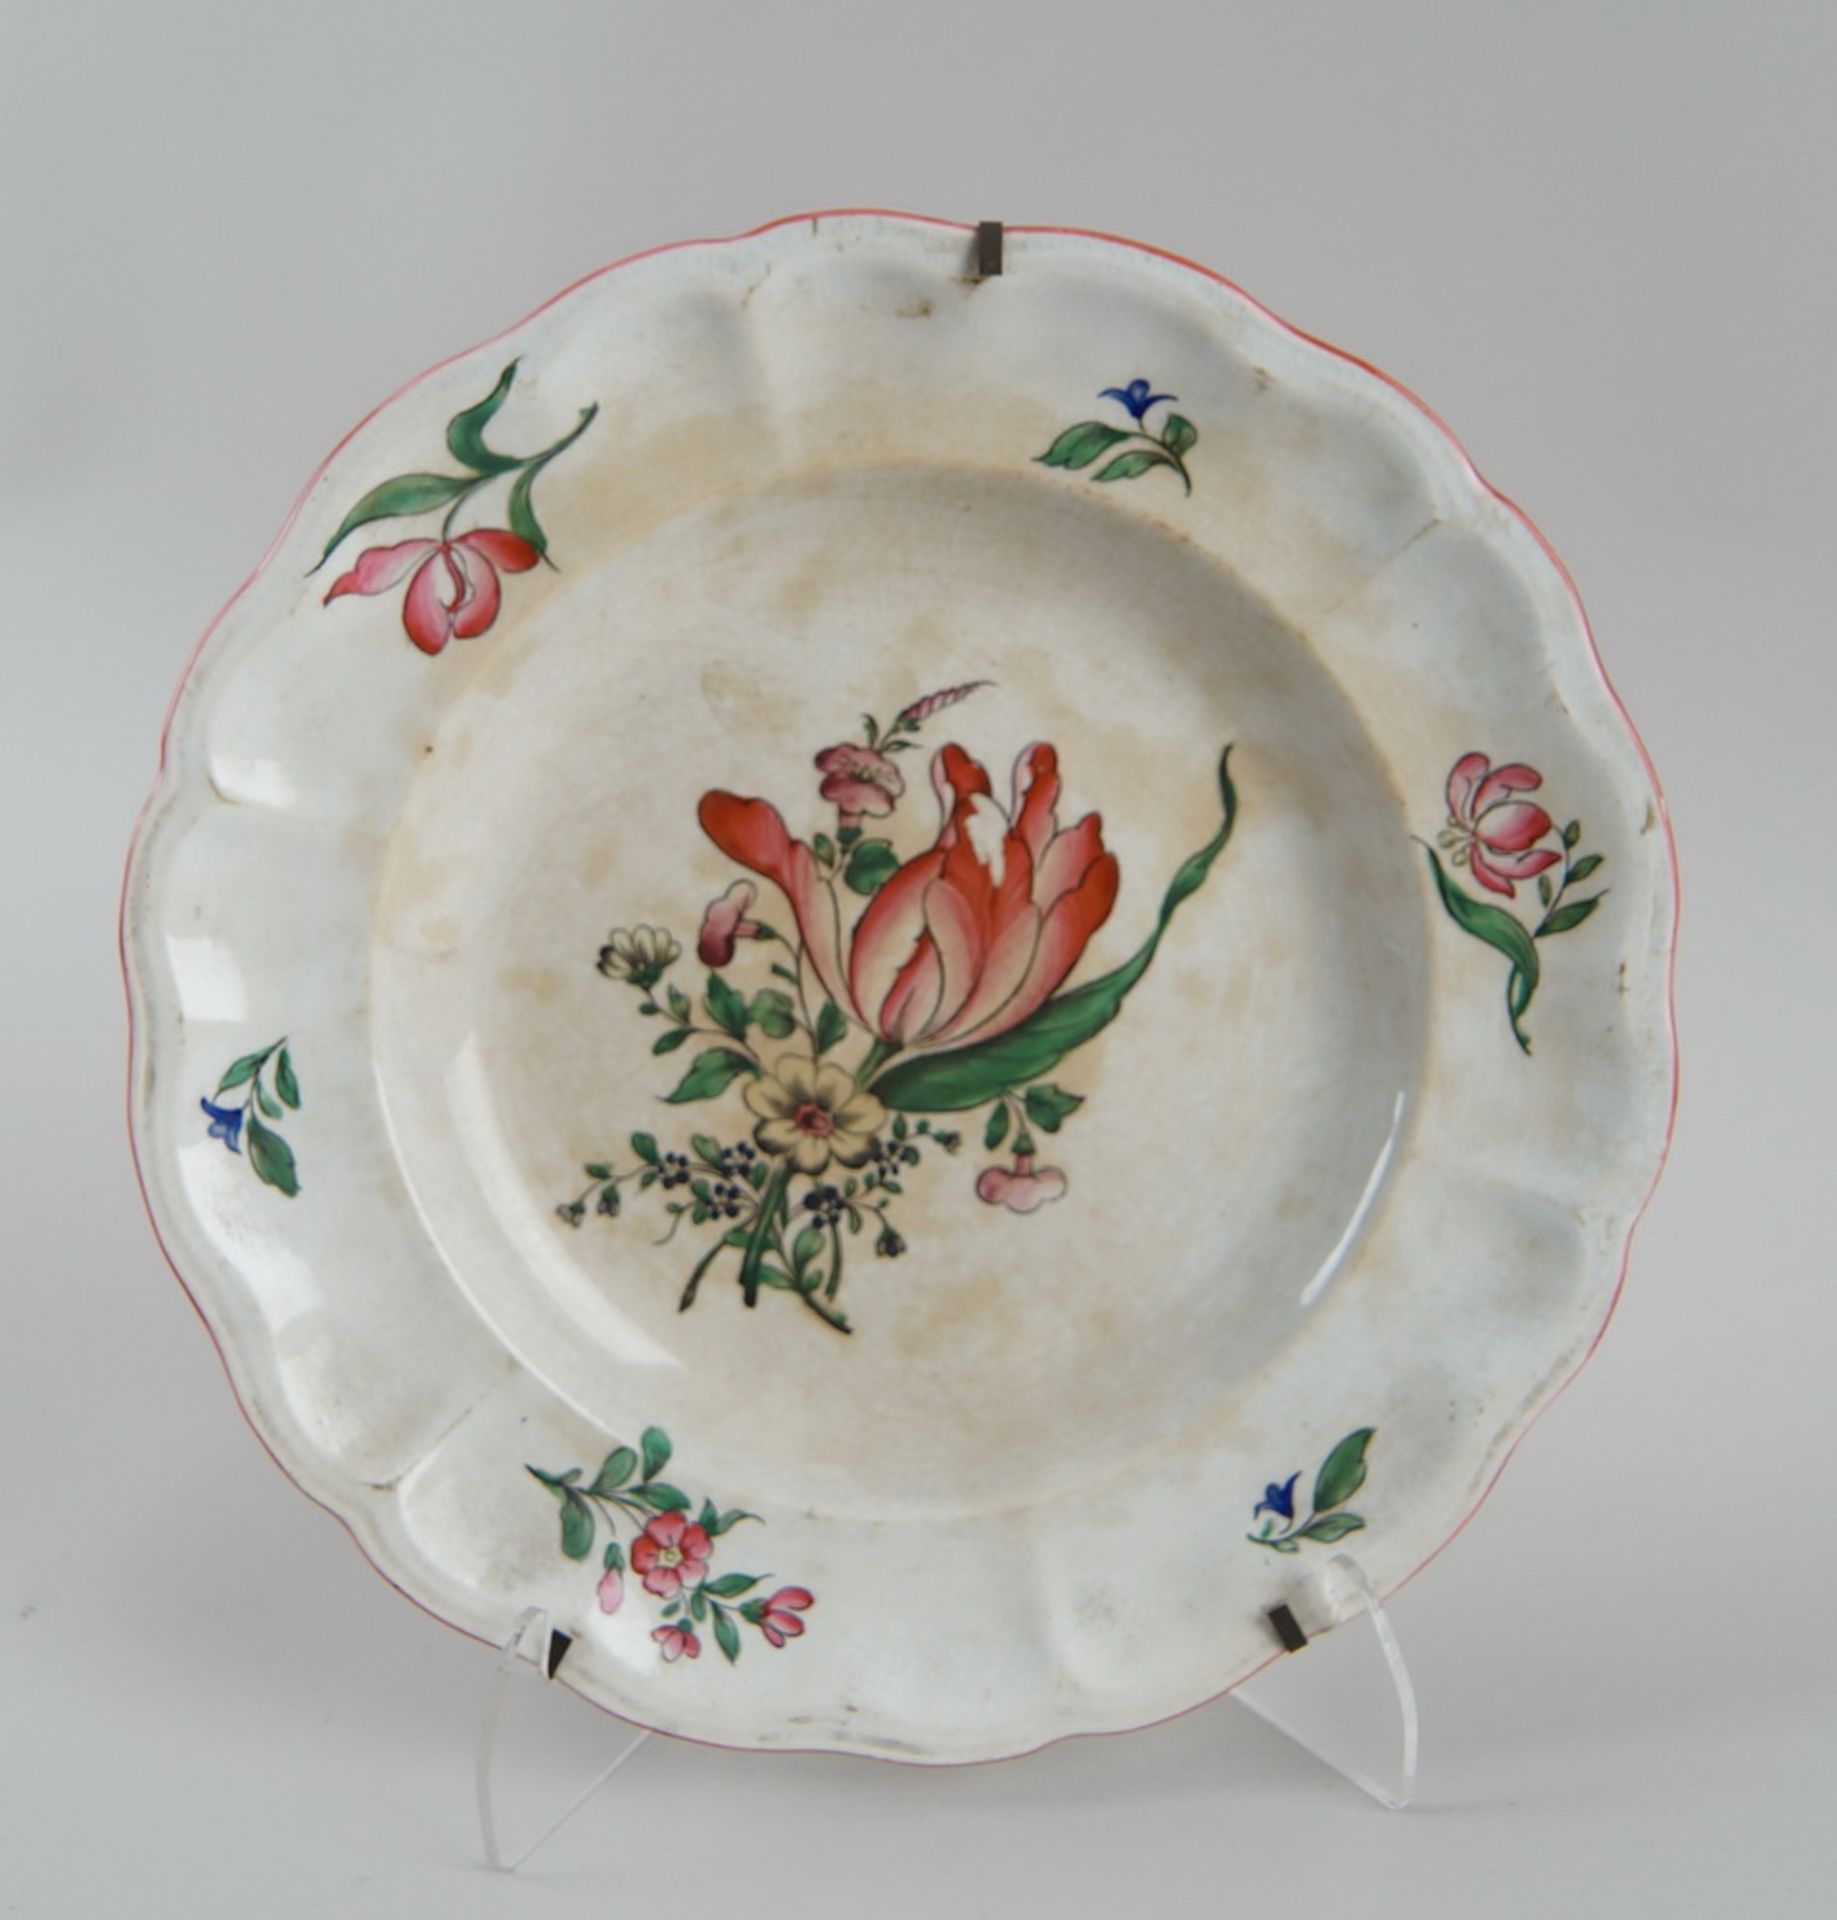 Keramikteller, floral bemalt, Altersspuren, verso gemarktet, Durchmesser 24cm - Bild 2 aus 4